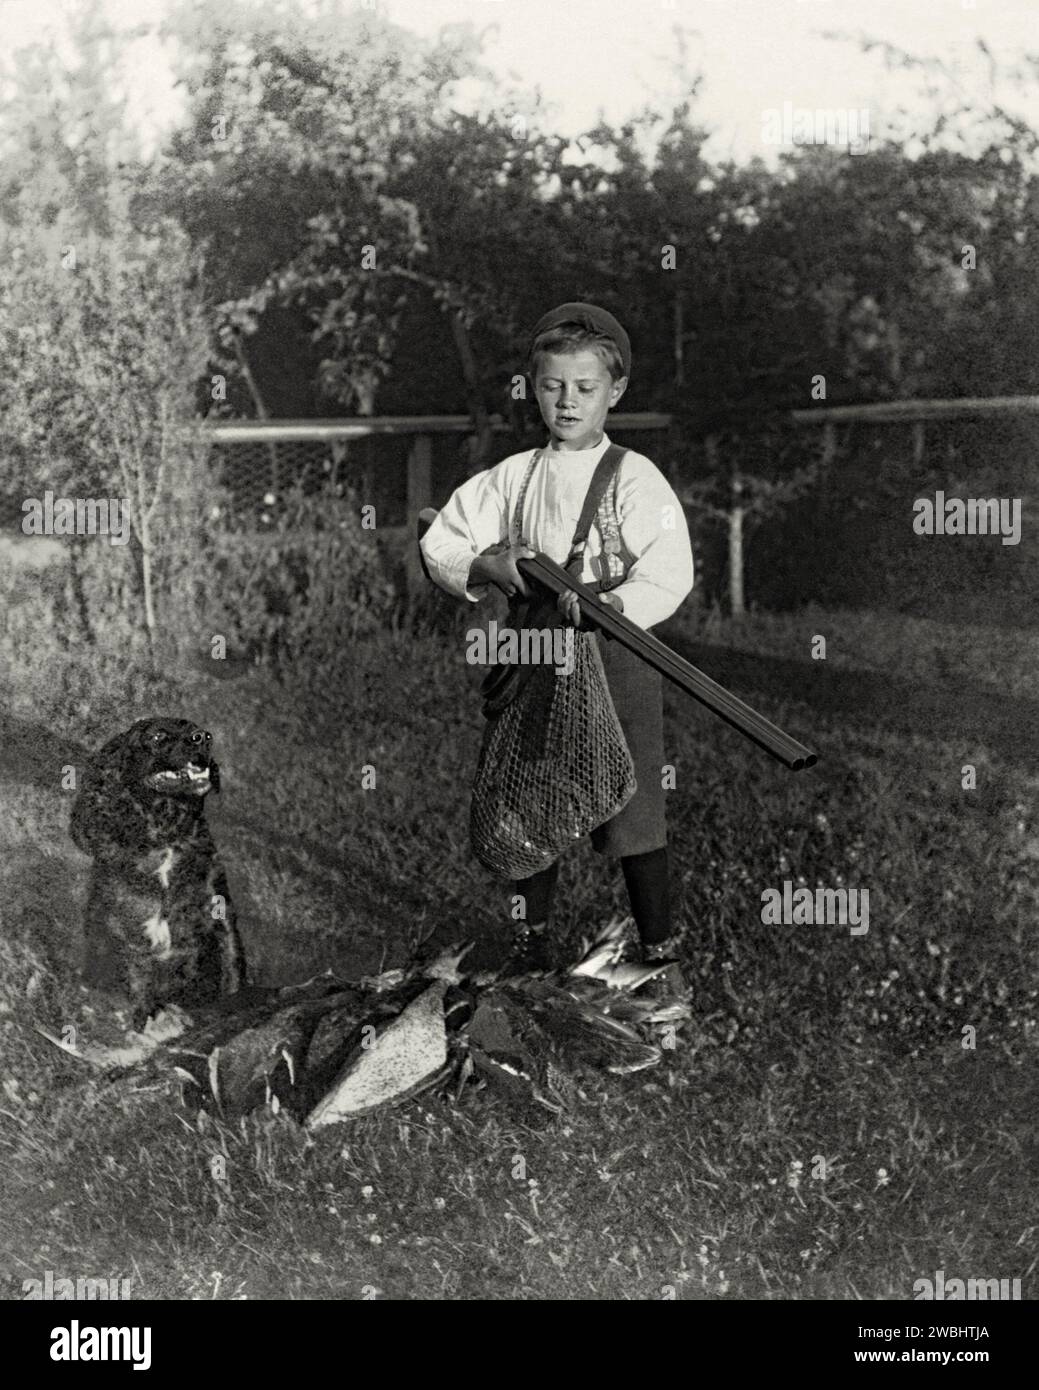 Une vieille photographie d’un garçon et de son chien armé posant dans le jardin après une journée de tournage à Maple Grove Farm, Rosser, Manitoba, Canada, au début du 20e siècle. Il porte un fusil à double canon. Dans son sac en filet et sur le sol sont les nombreux oiseaux qui ont été abattus. Le garçon porte une culotte maintenue avec des bretelles. Ceci est tiré d'un album de photos de début. Banque D'Images